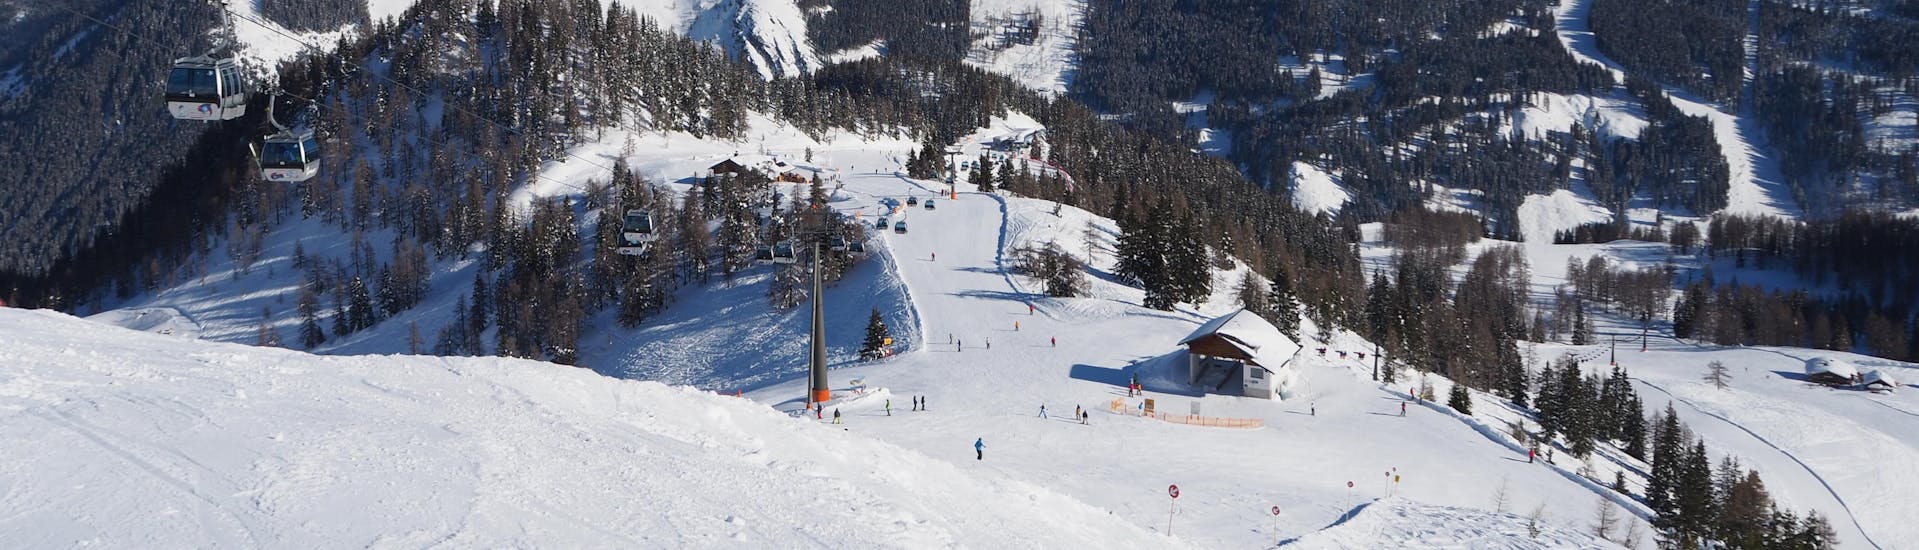 Adultes et enfants skiant dans la station de ski de Radstadt.